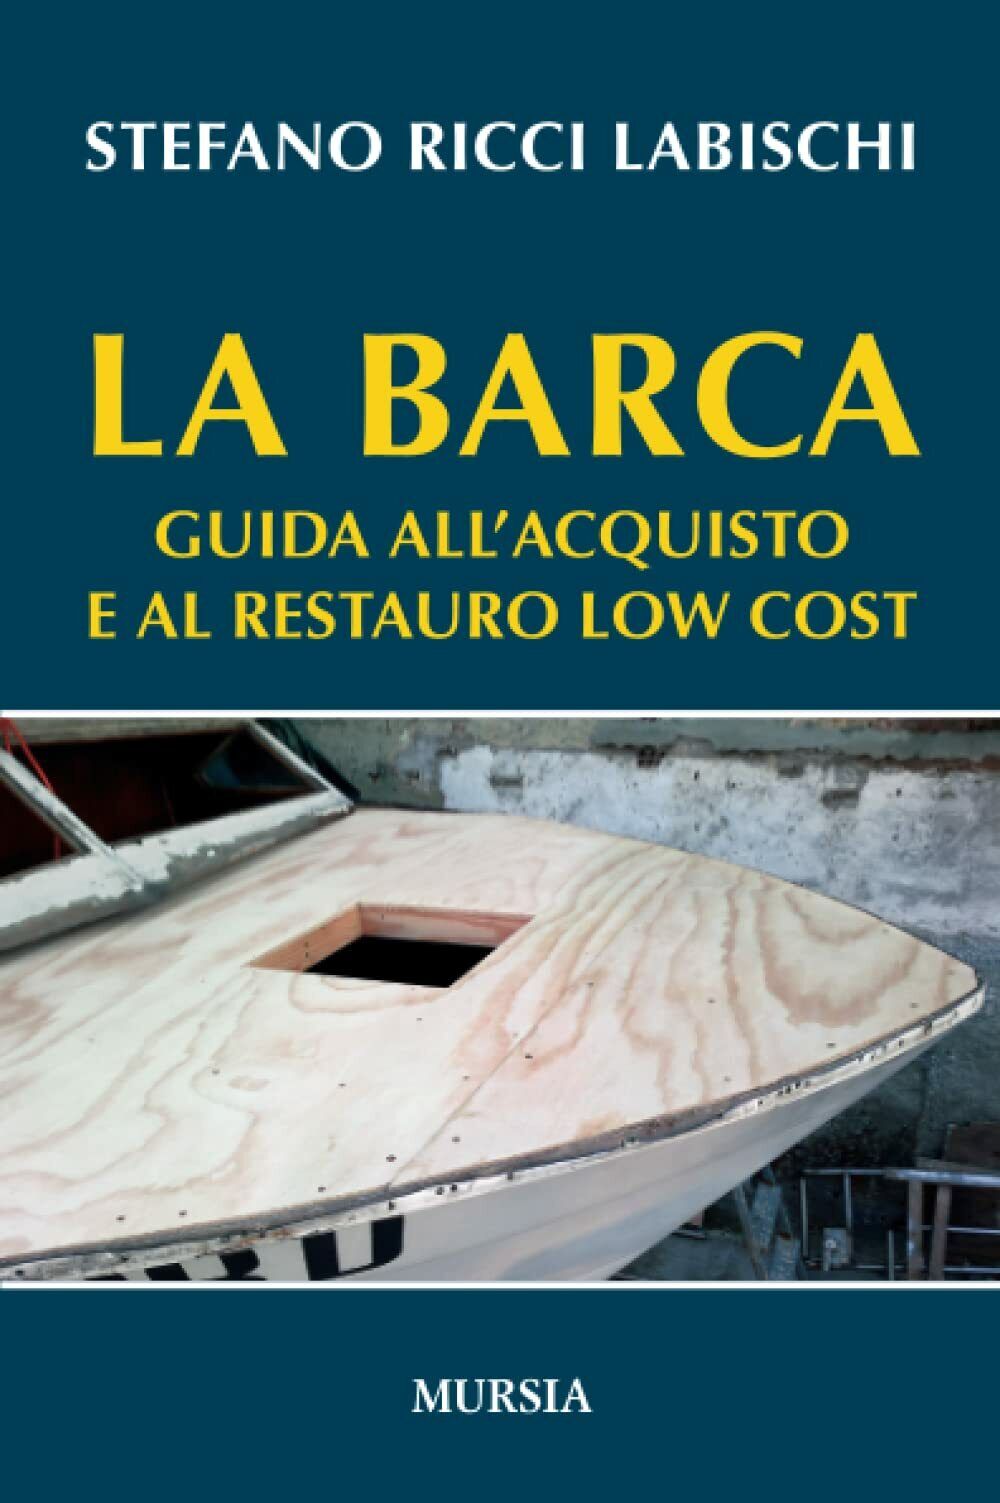 La barca: Guida alL'acquisto e al restauro low cost -Stefano Ricci Labischi-2017 libro usato